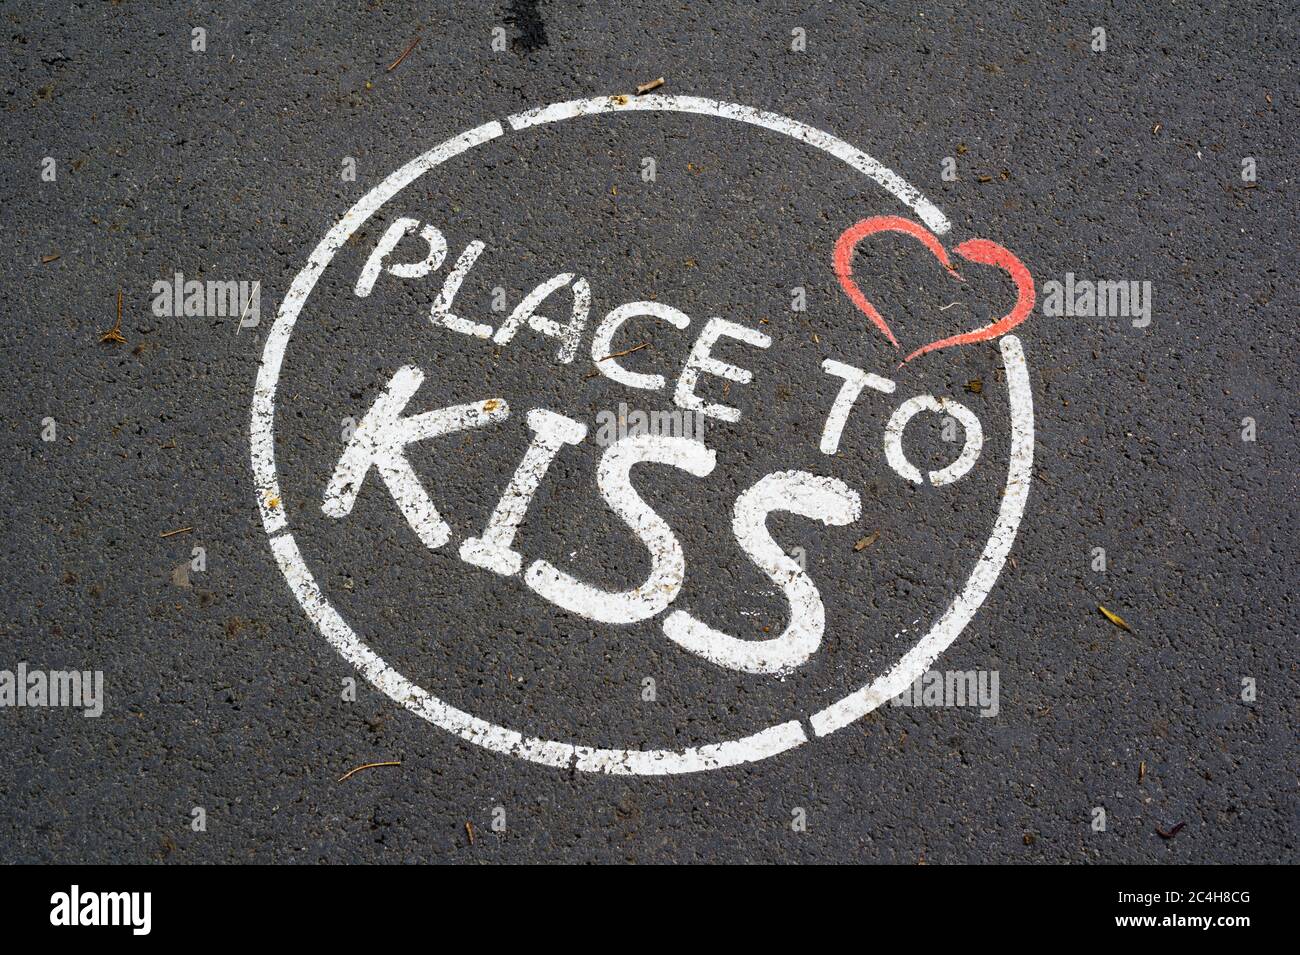 Opava, Tschechien - 11. August 2016: Kreis, rotes Herz und Text Platz zu Kiss gemalt auf Bürgersteig. Romantische Anziehungskraft, um intime Gefühle zu zeigen Stockfoto